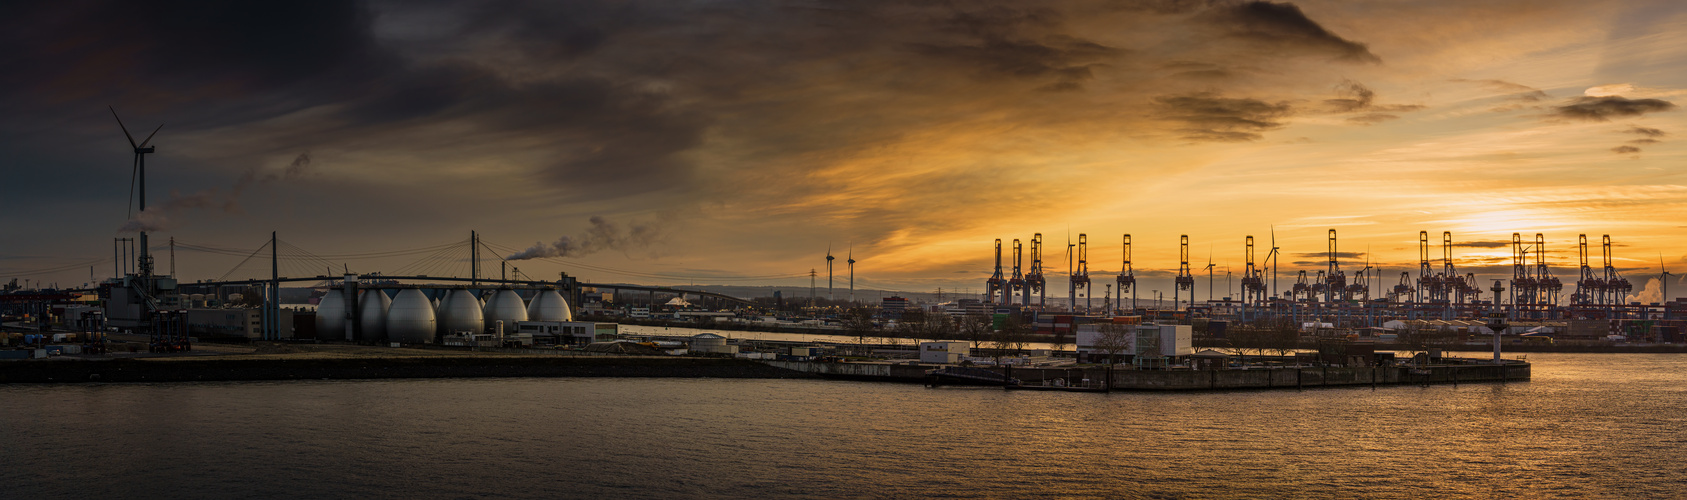 Panorama vom Hamburger Hafen (Süderelbe) mit der Köhlbrandbrücke bei Sonnenuntergang